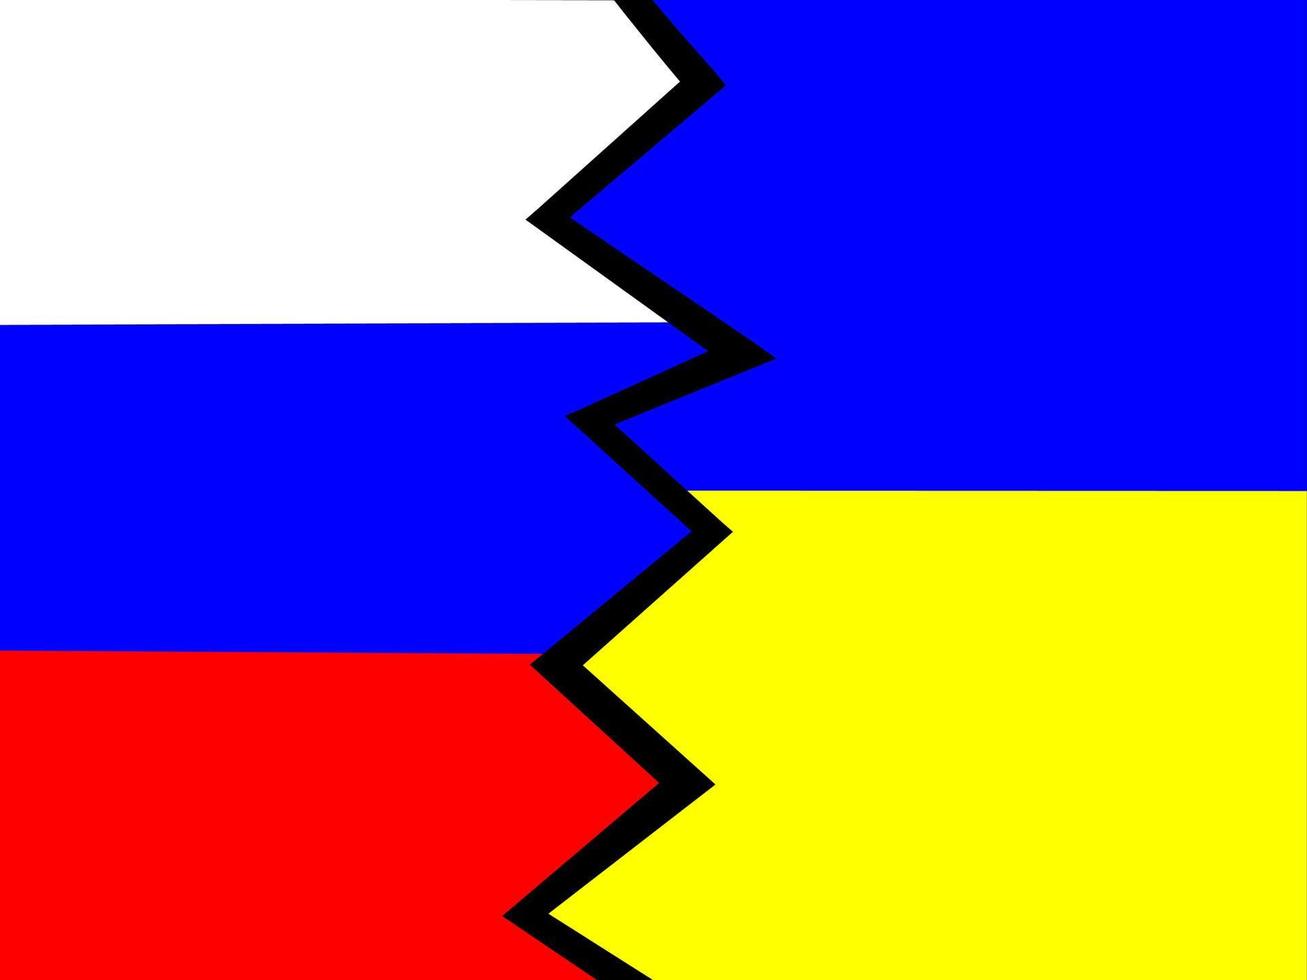 la bandera de rusia y ucrania separadas por un rayo. el enfrentamiento entre los dos países. el concepto de guerra y agresión. gráficos vectoriales vector